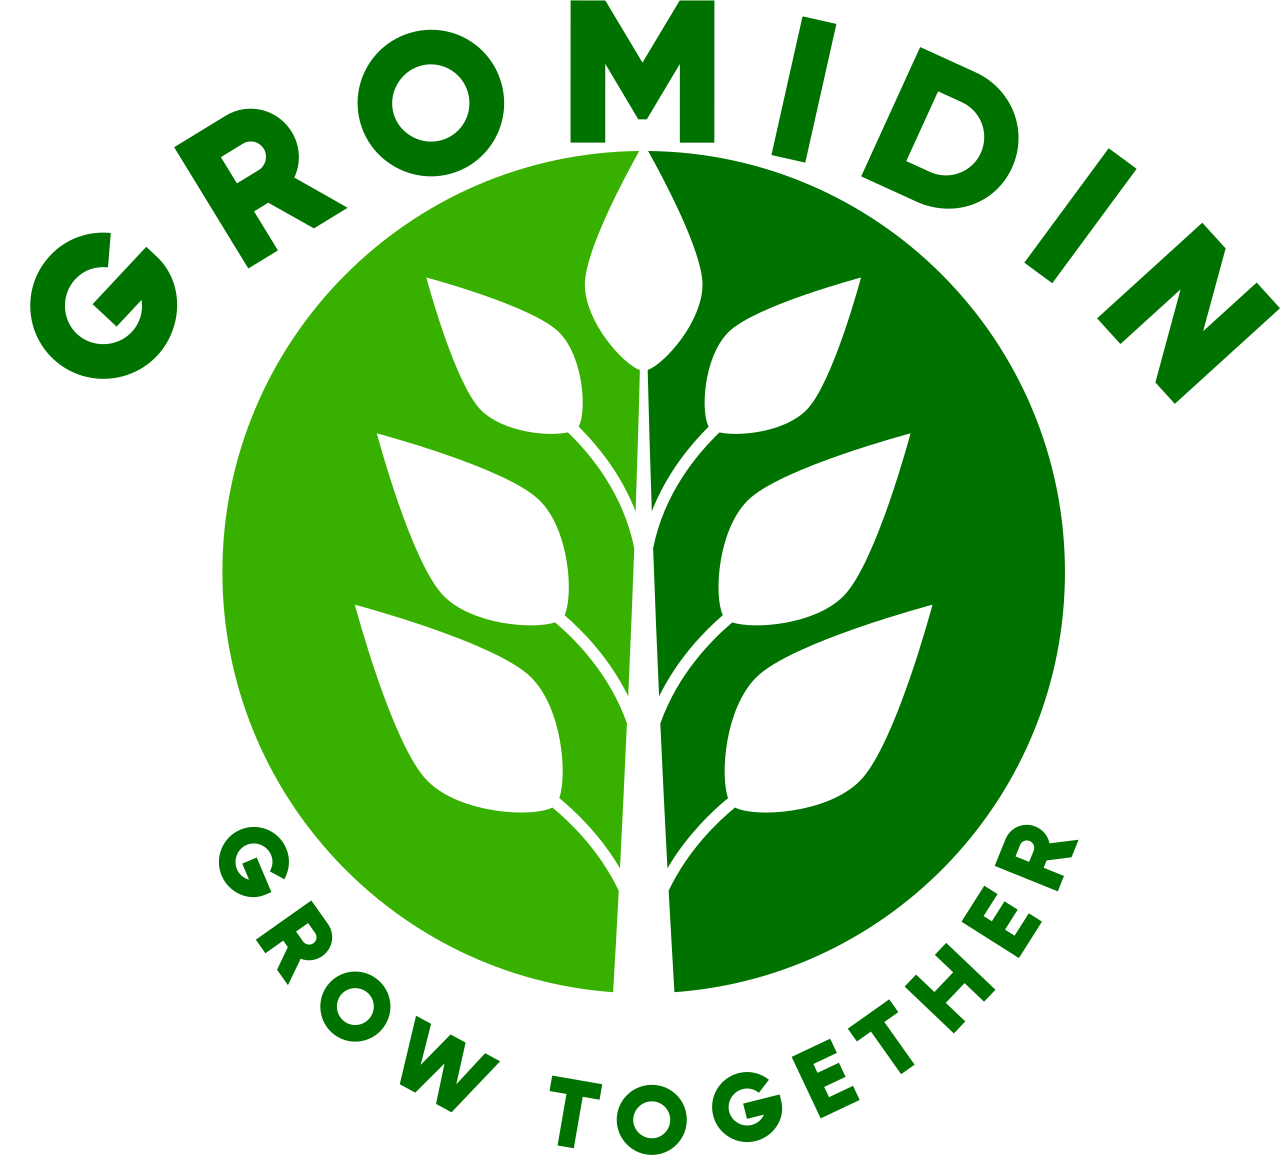 Gromidin's web page